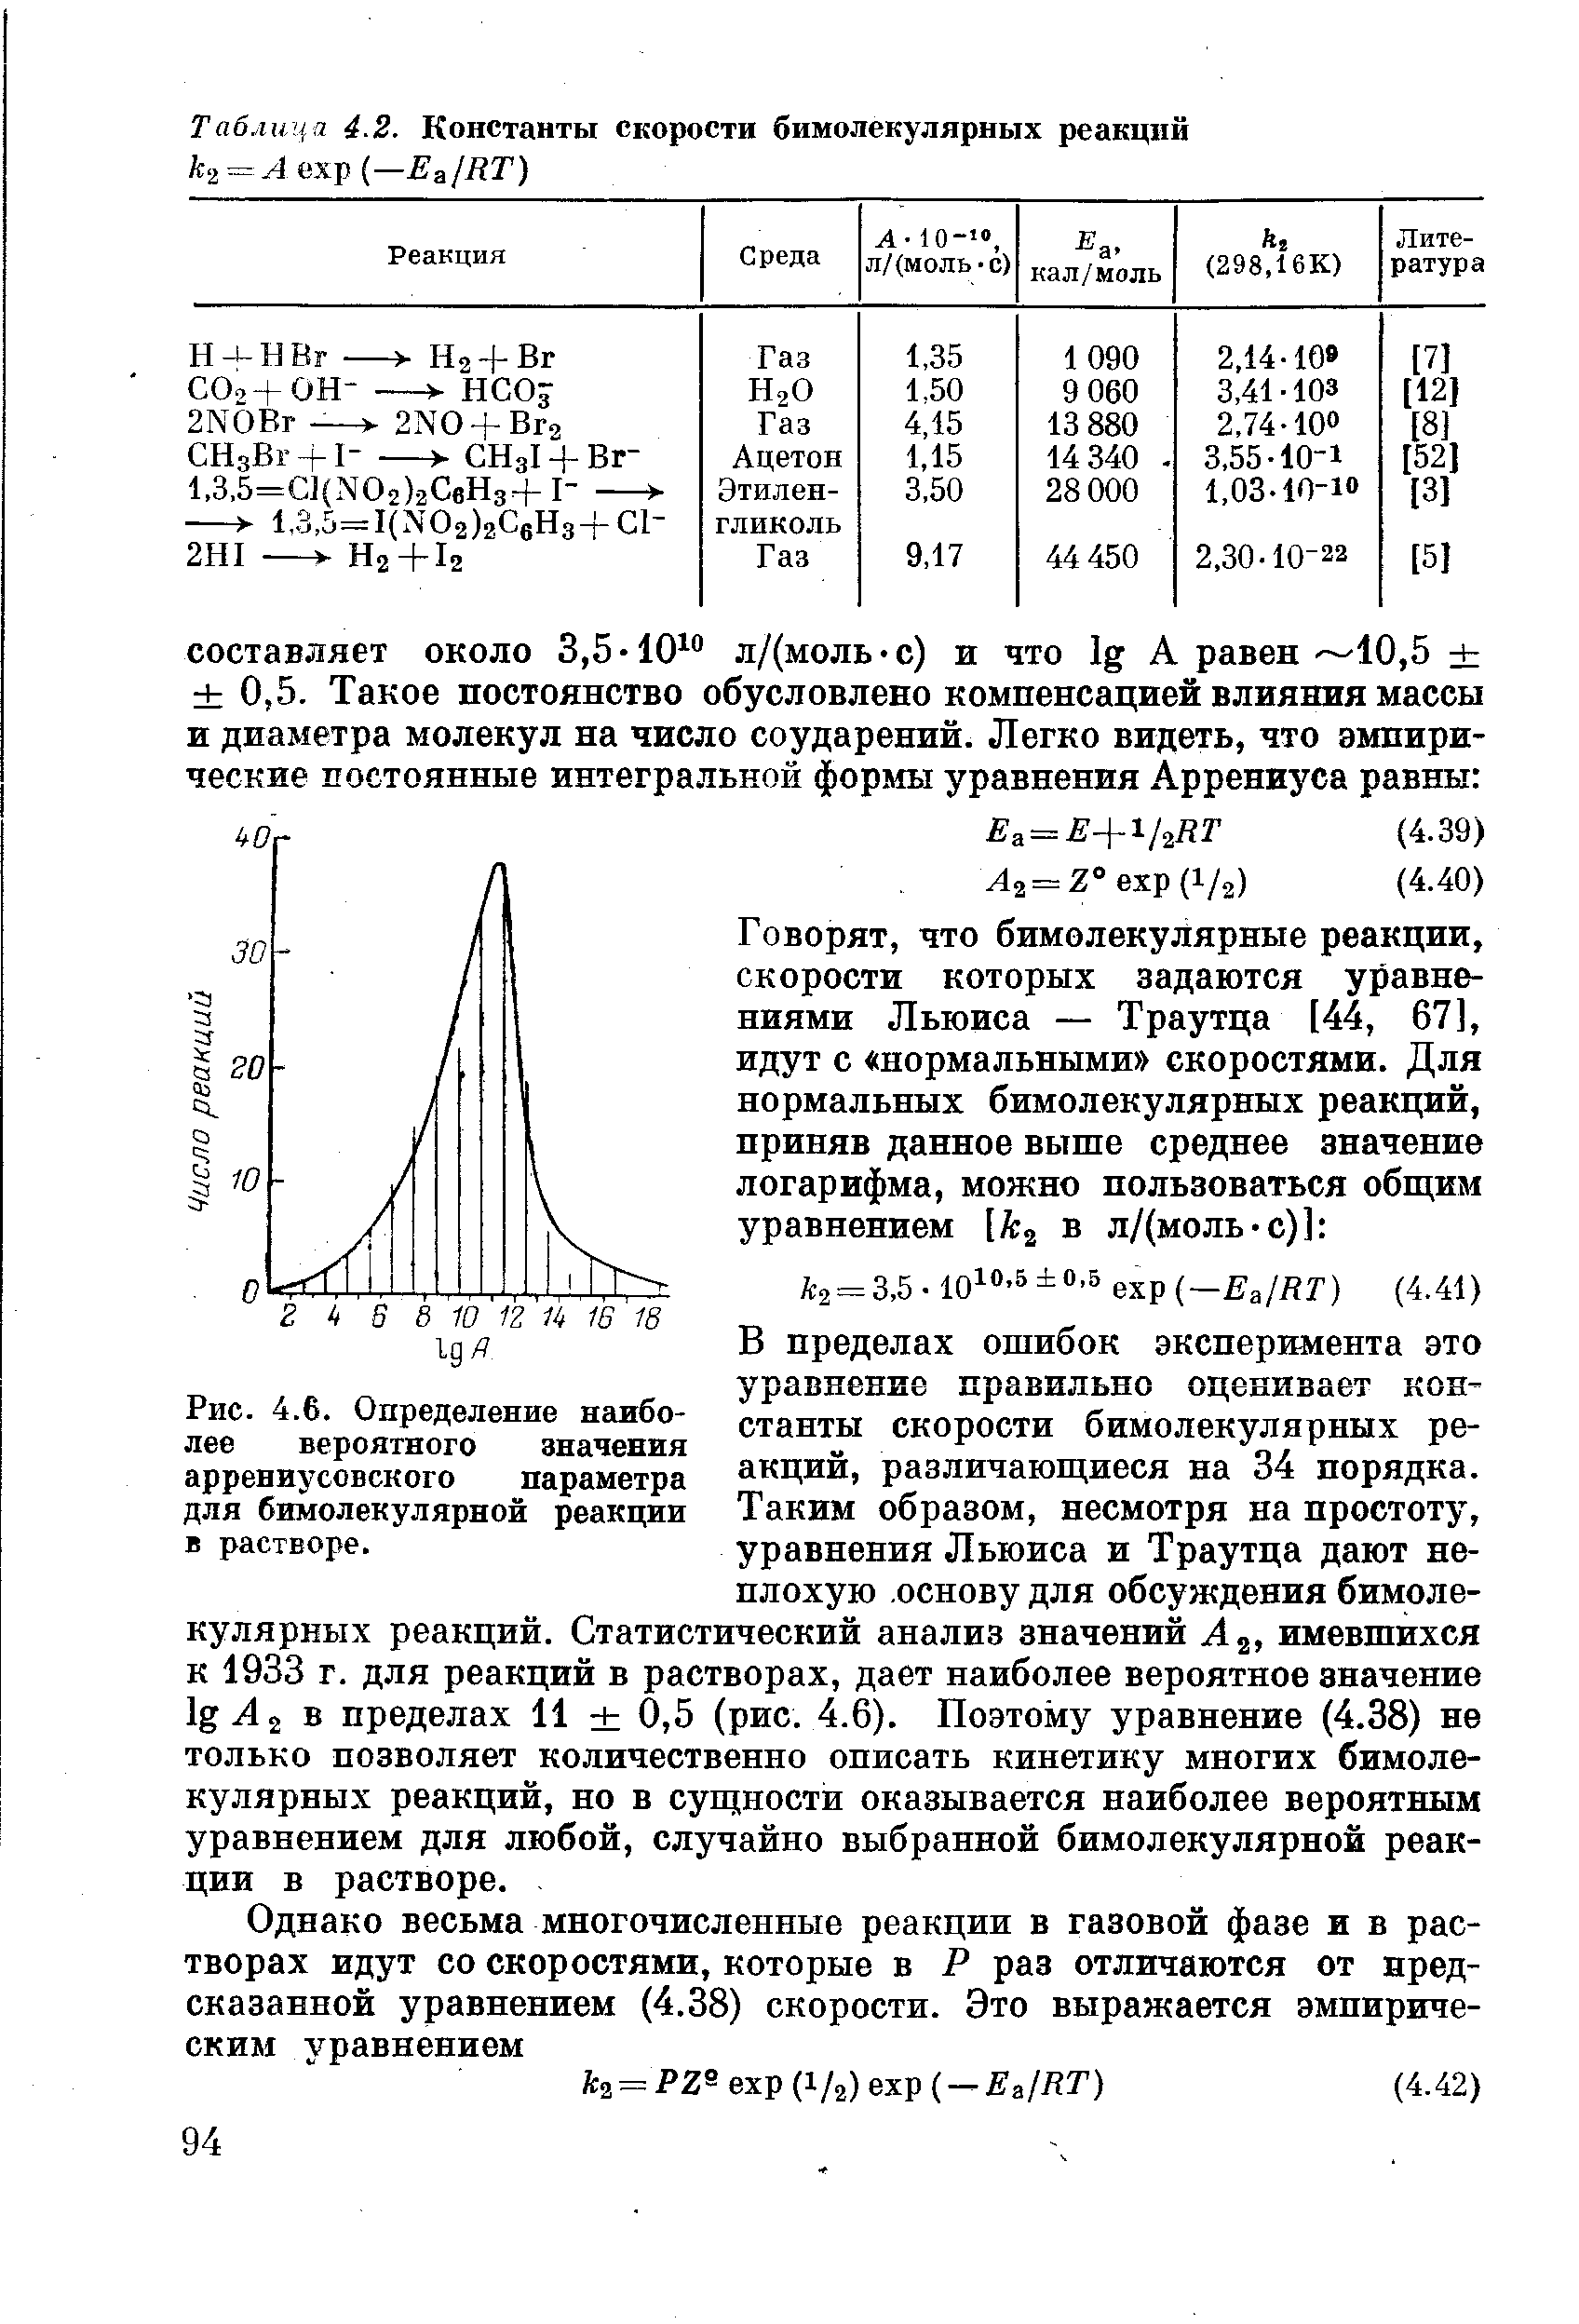 В пределах ошибок эксперимента это уравнение правильно оценивает константы скорости бимолекулярных реакций, различающиеся на 34 порядка. Таким образом, несмотря на простоту, уравнения Льюиса и Траутца дают неплохую основу для обсуждения бимолекулярных реакций. Статистический анализ значений А , имевшихся к 1933 г. для реакций в растворах, дает наиболее вероятное значение lg 2 в пределах И 0,5 (рис. 4.6). Поэтому уравнение (4.38) не только позволяет количественно описать кинетику многих бимолекулярных реакций, но в сущности оказывается наиболее вероятным уравнением для любой, случайно выбранной бимолекулярной реакции в растворе.